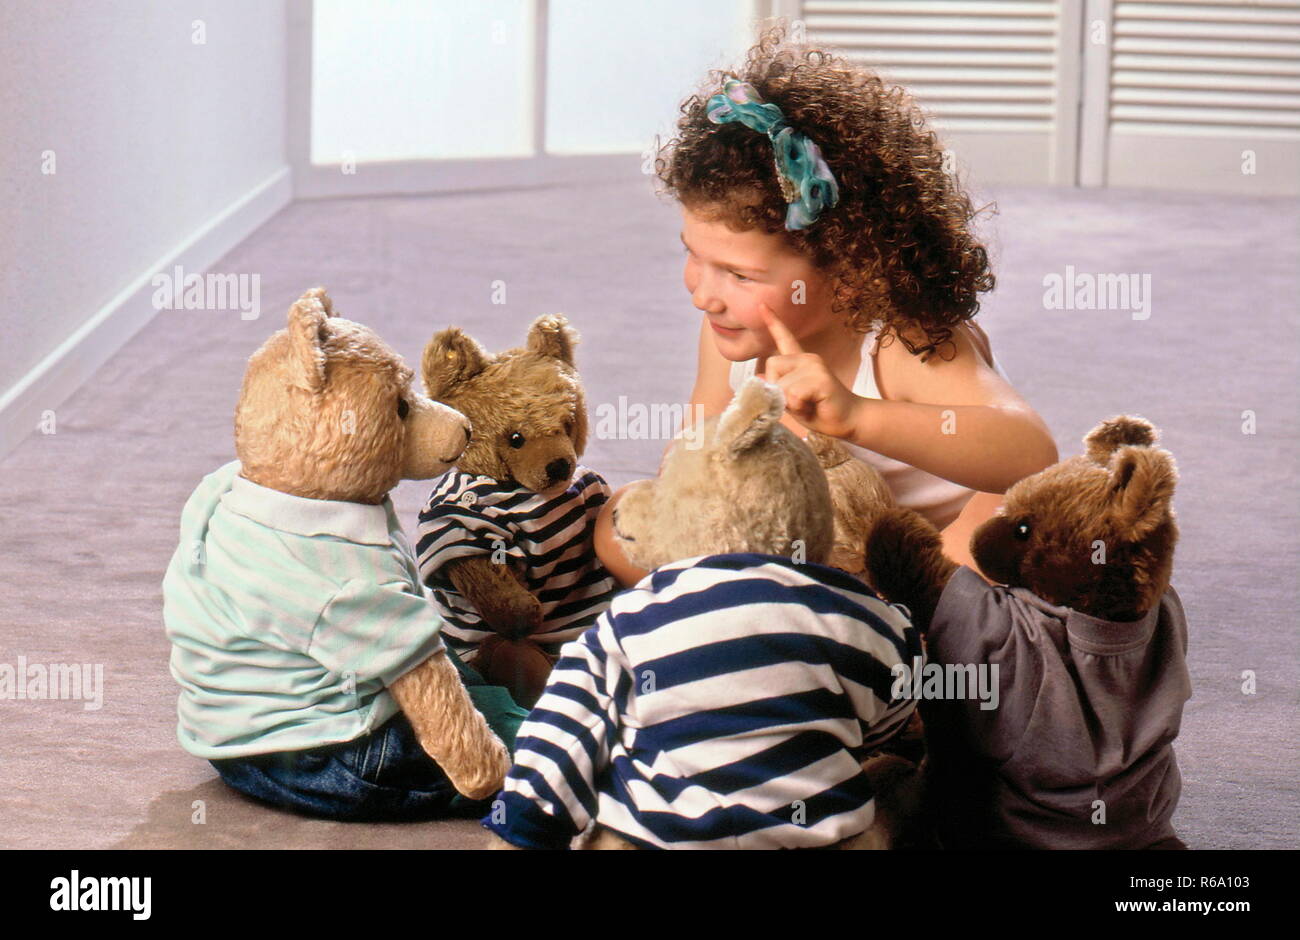 Portrait, Maedchen mit braunen Locken, 5 Jahre, spielt mit ihren 4 Teddys, bekleidet mit T-Shirt und Jeans Stock Photo